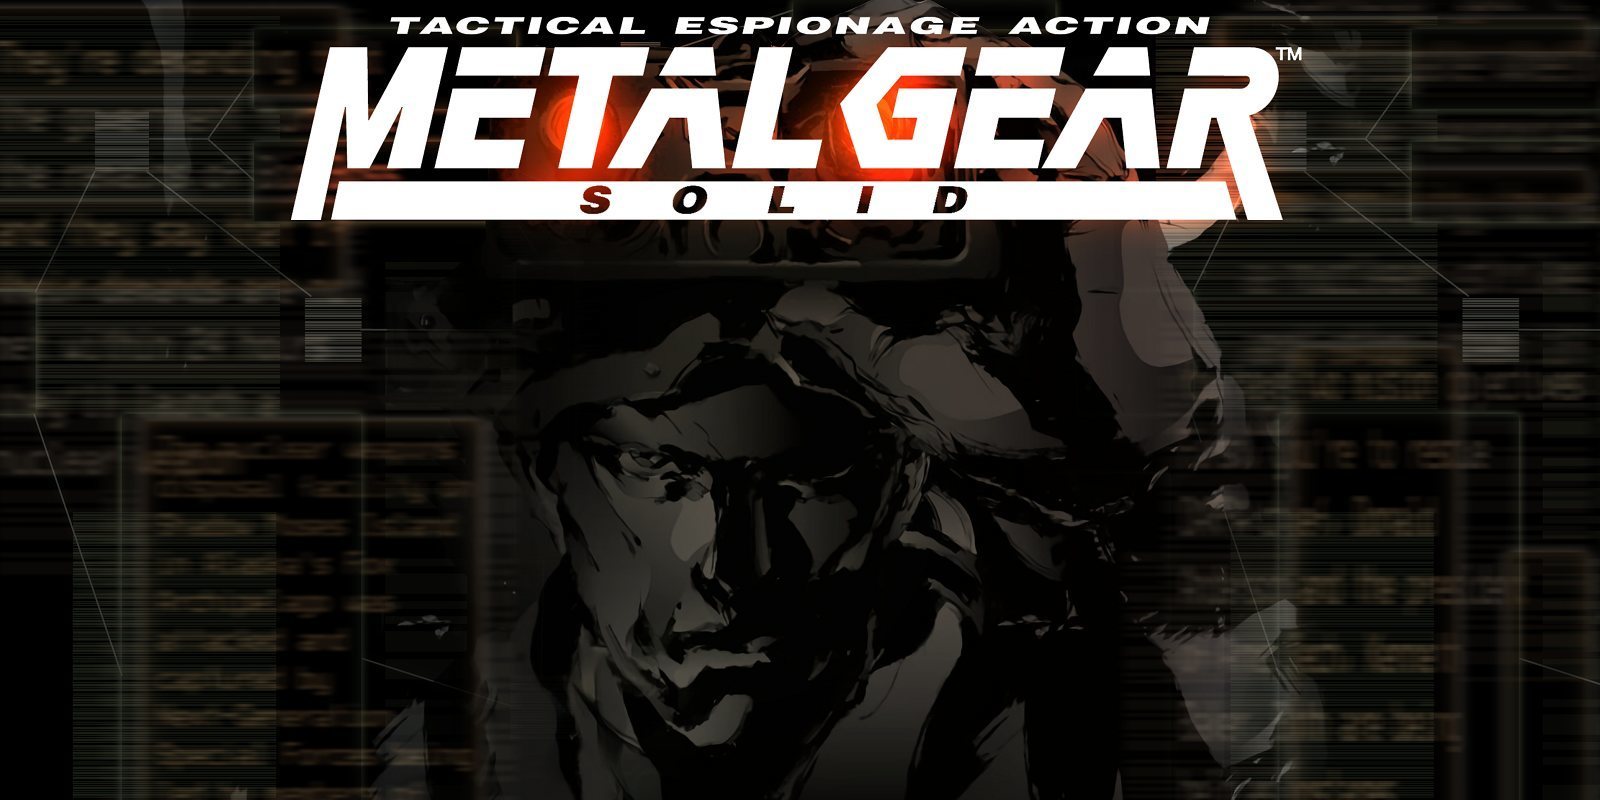 El remake de 'Metal Gear Solid' podría ser cierto según el actor de doblaje de Solid Snake